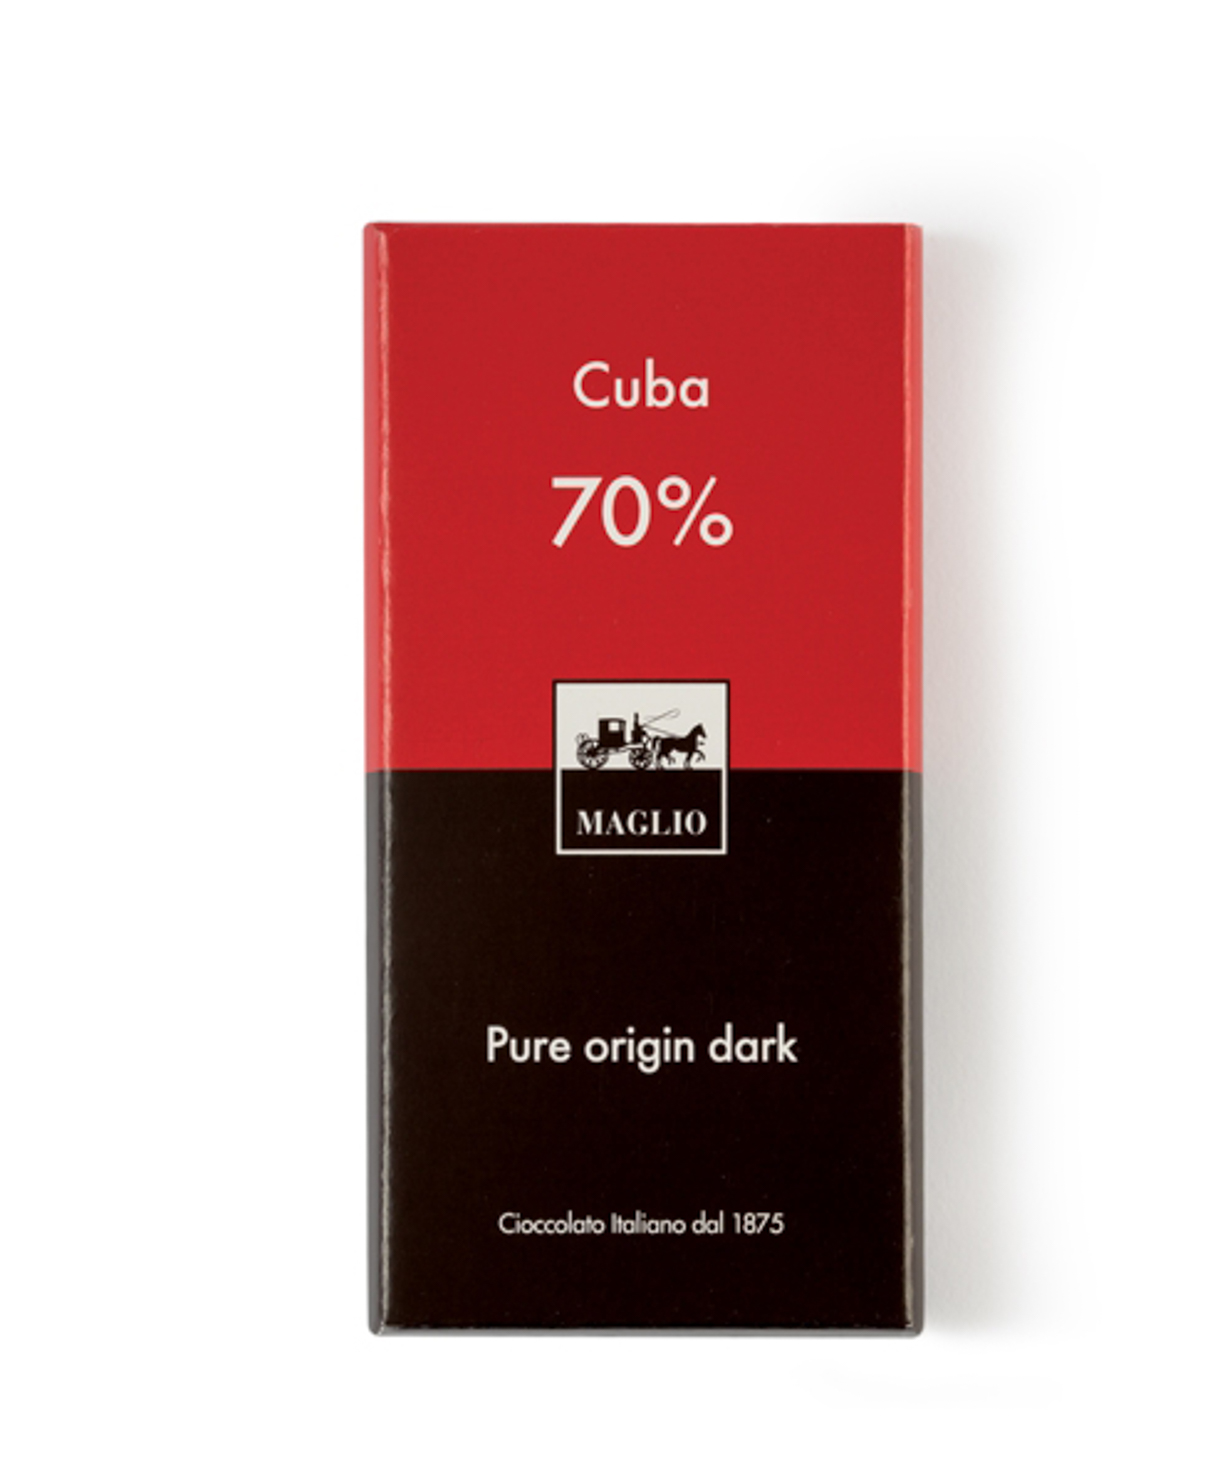 Chocolate bar `Maglio Cuba 70%` dark 80g